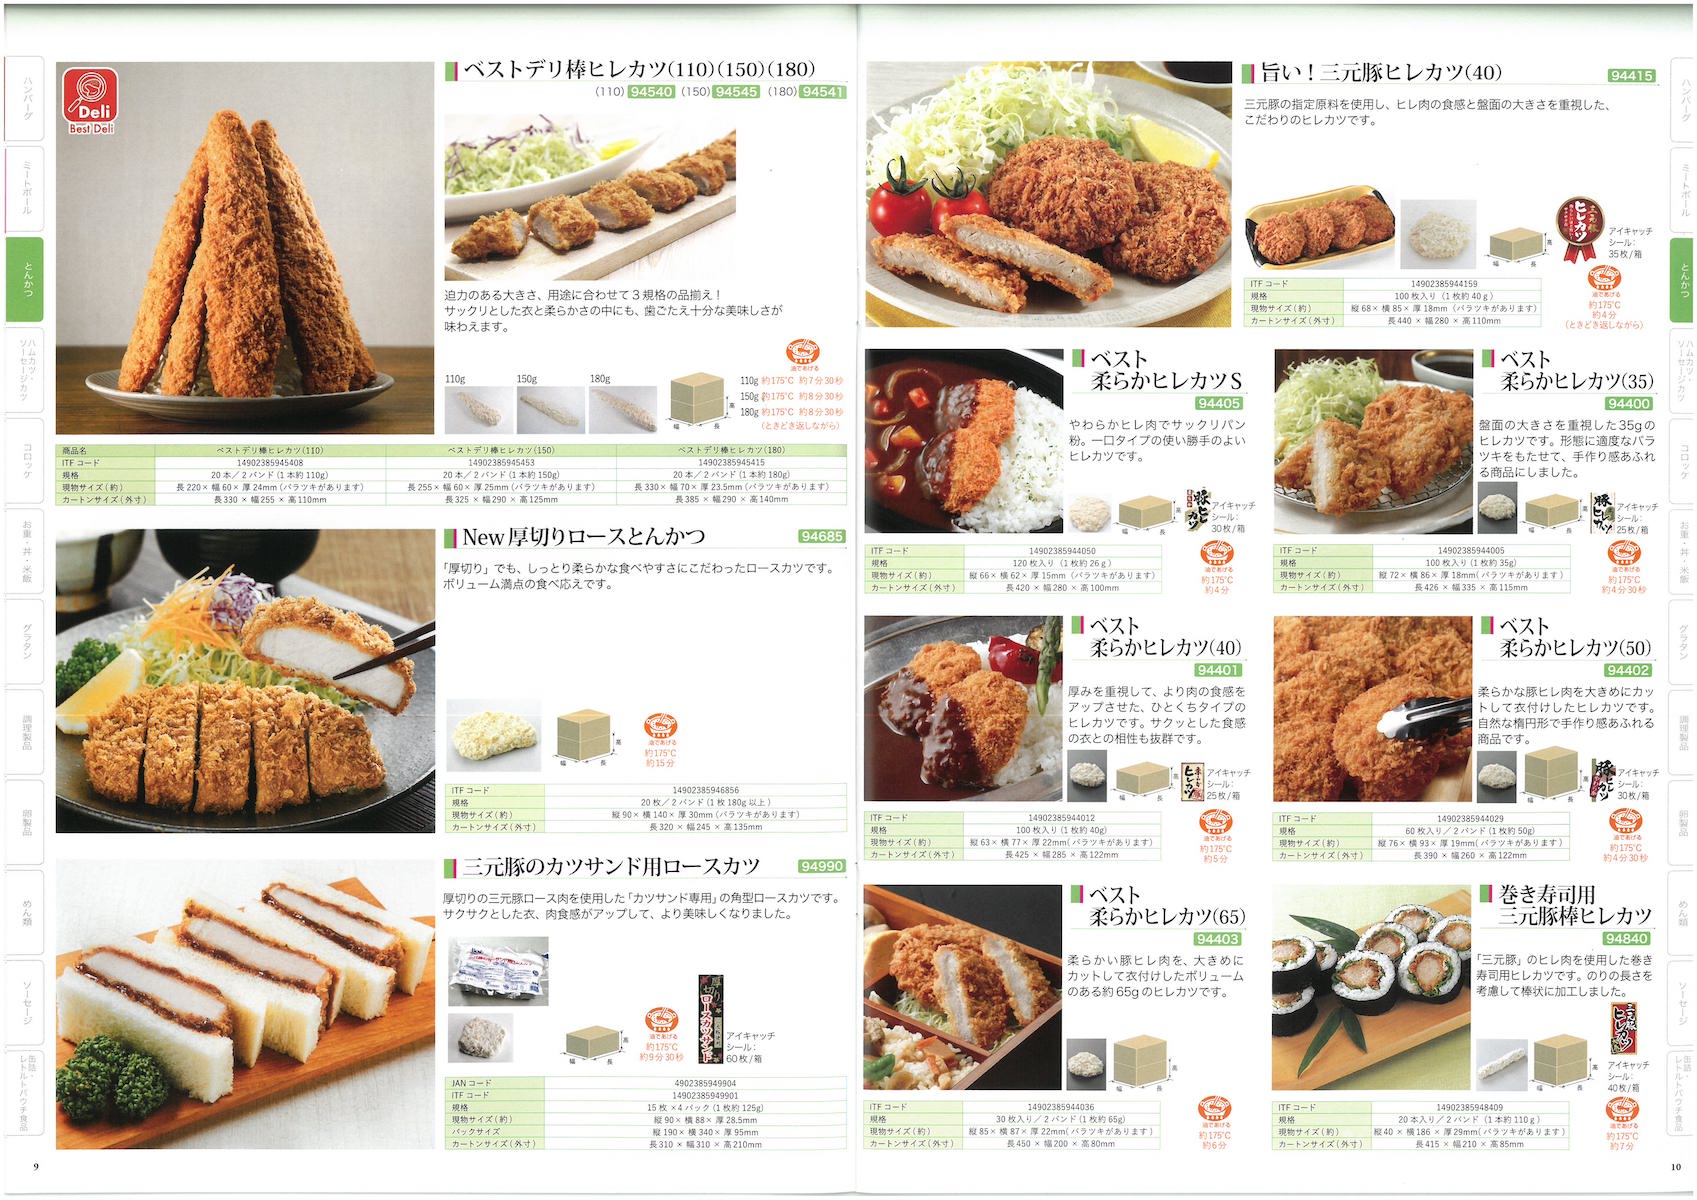 日東ベスト2021業務用食品総合カタログ Best Selection | 冷凍食品カタログ.com